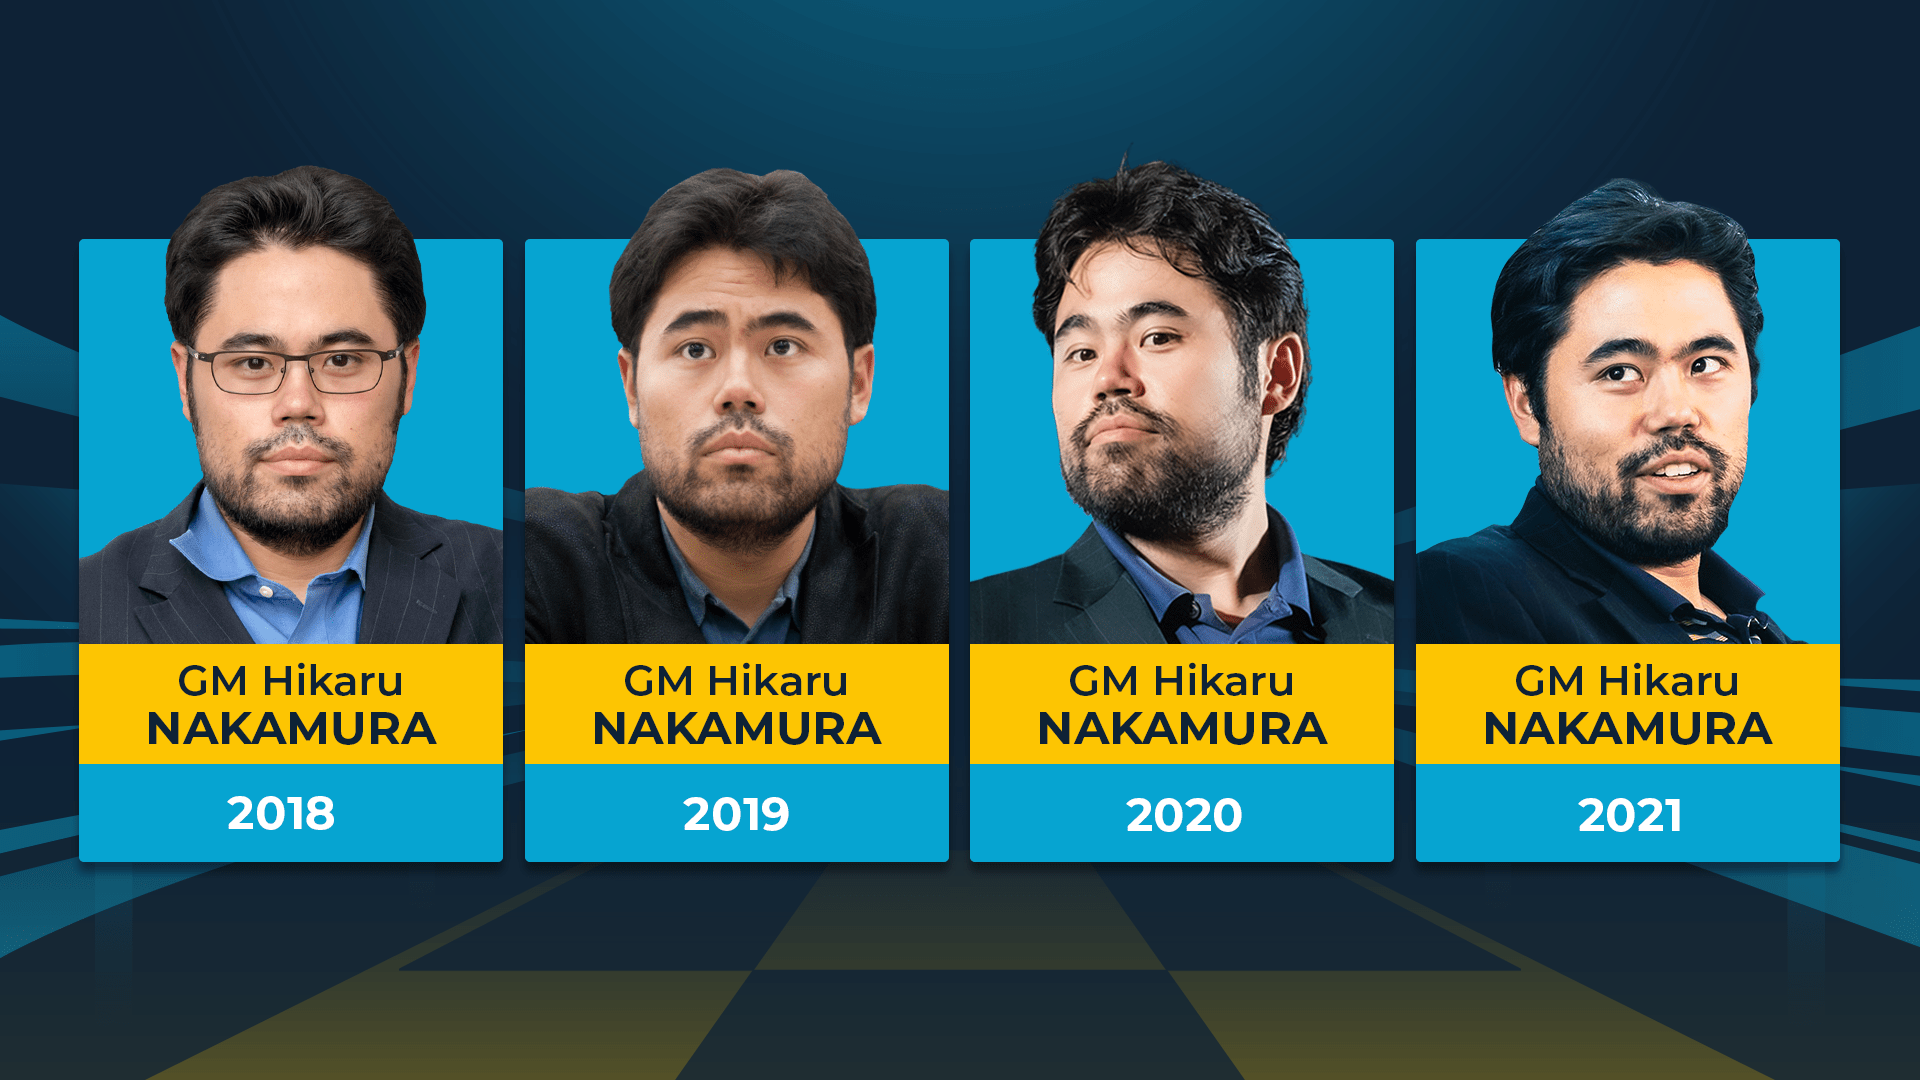 ฮิคารุ นากามูระ แชมป์หมากรุกความเร็วปี 2022